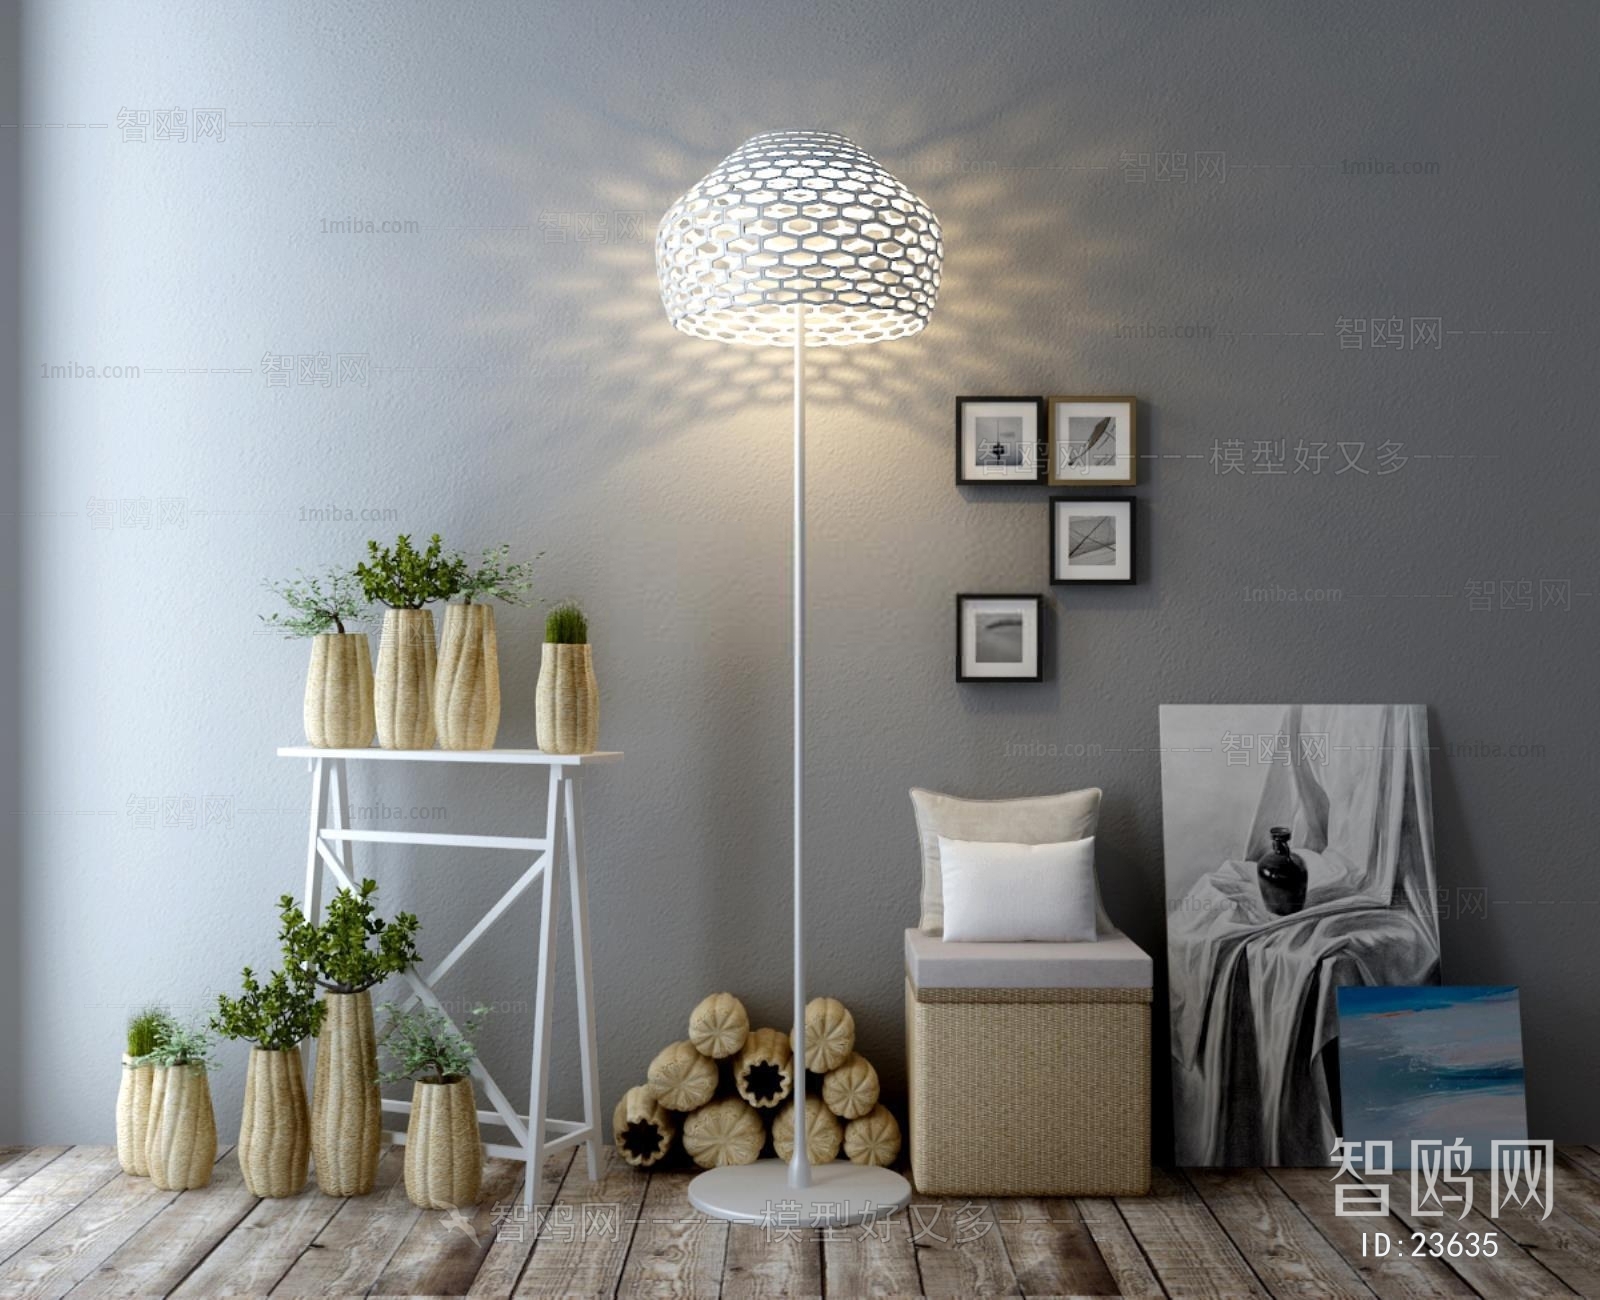 Modern Idyllic Style Floor Lamp